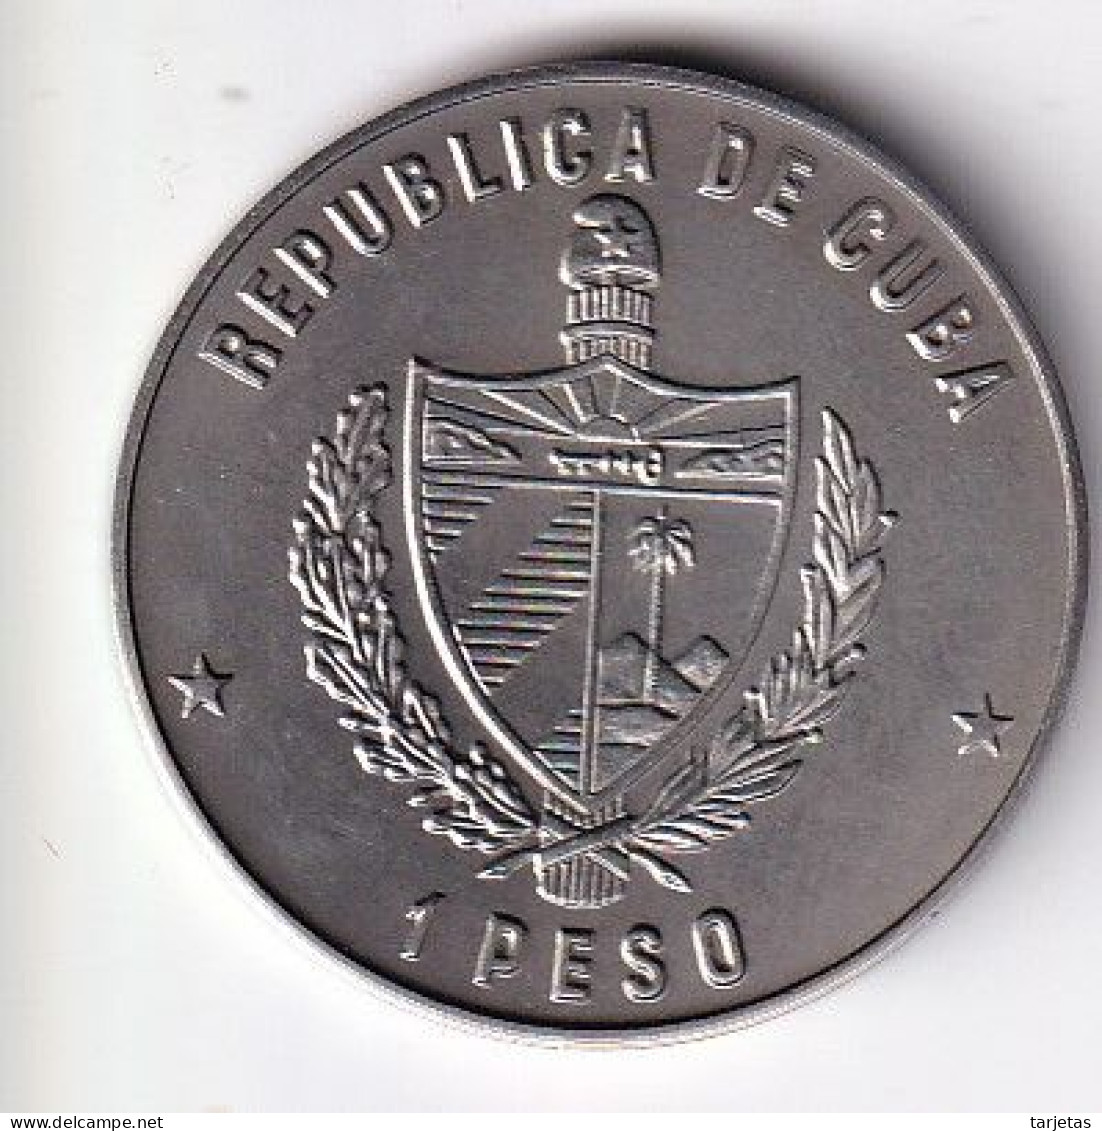 MONEDA DE CUBA DE 1 PESO DEL AÑO 1986 AÑO INTERNACIONAL DE LA PAZ (COIN)  (NUEVA - UNC) - Cuba